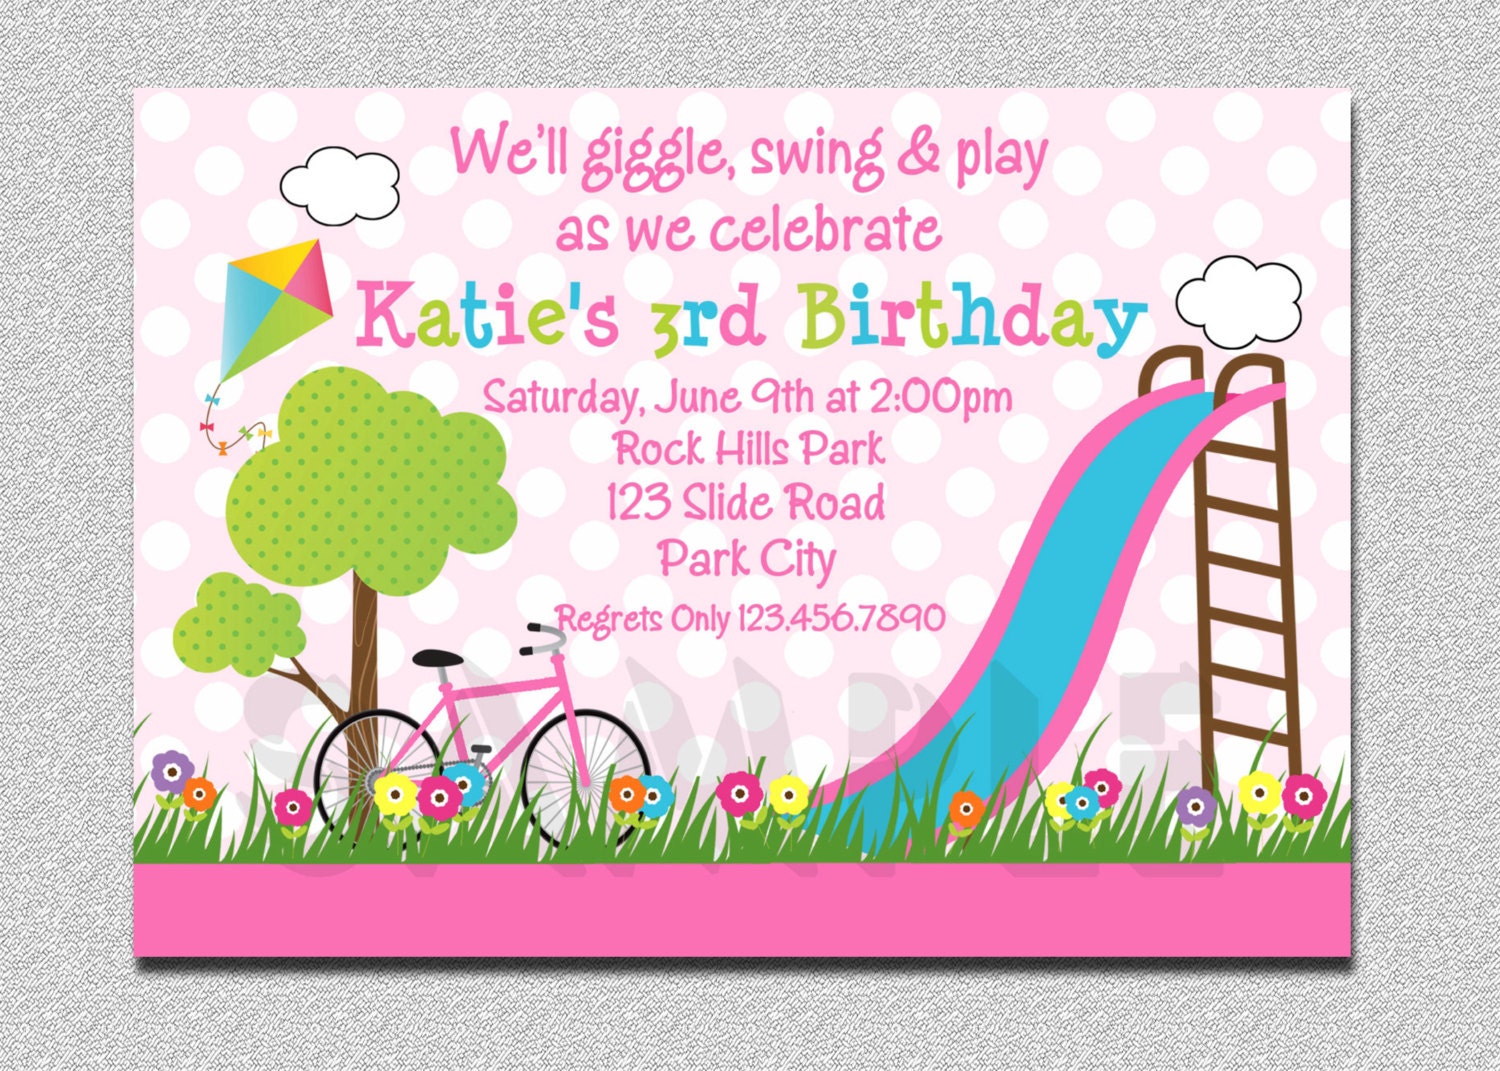 Birthday Party Invitations, Girls, Pink, Playground, Swing, Slide, Kite, Flowers, Tree, Playground Invitation, Picnic Invitaiton